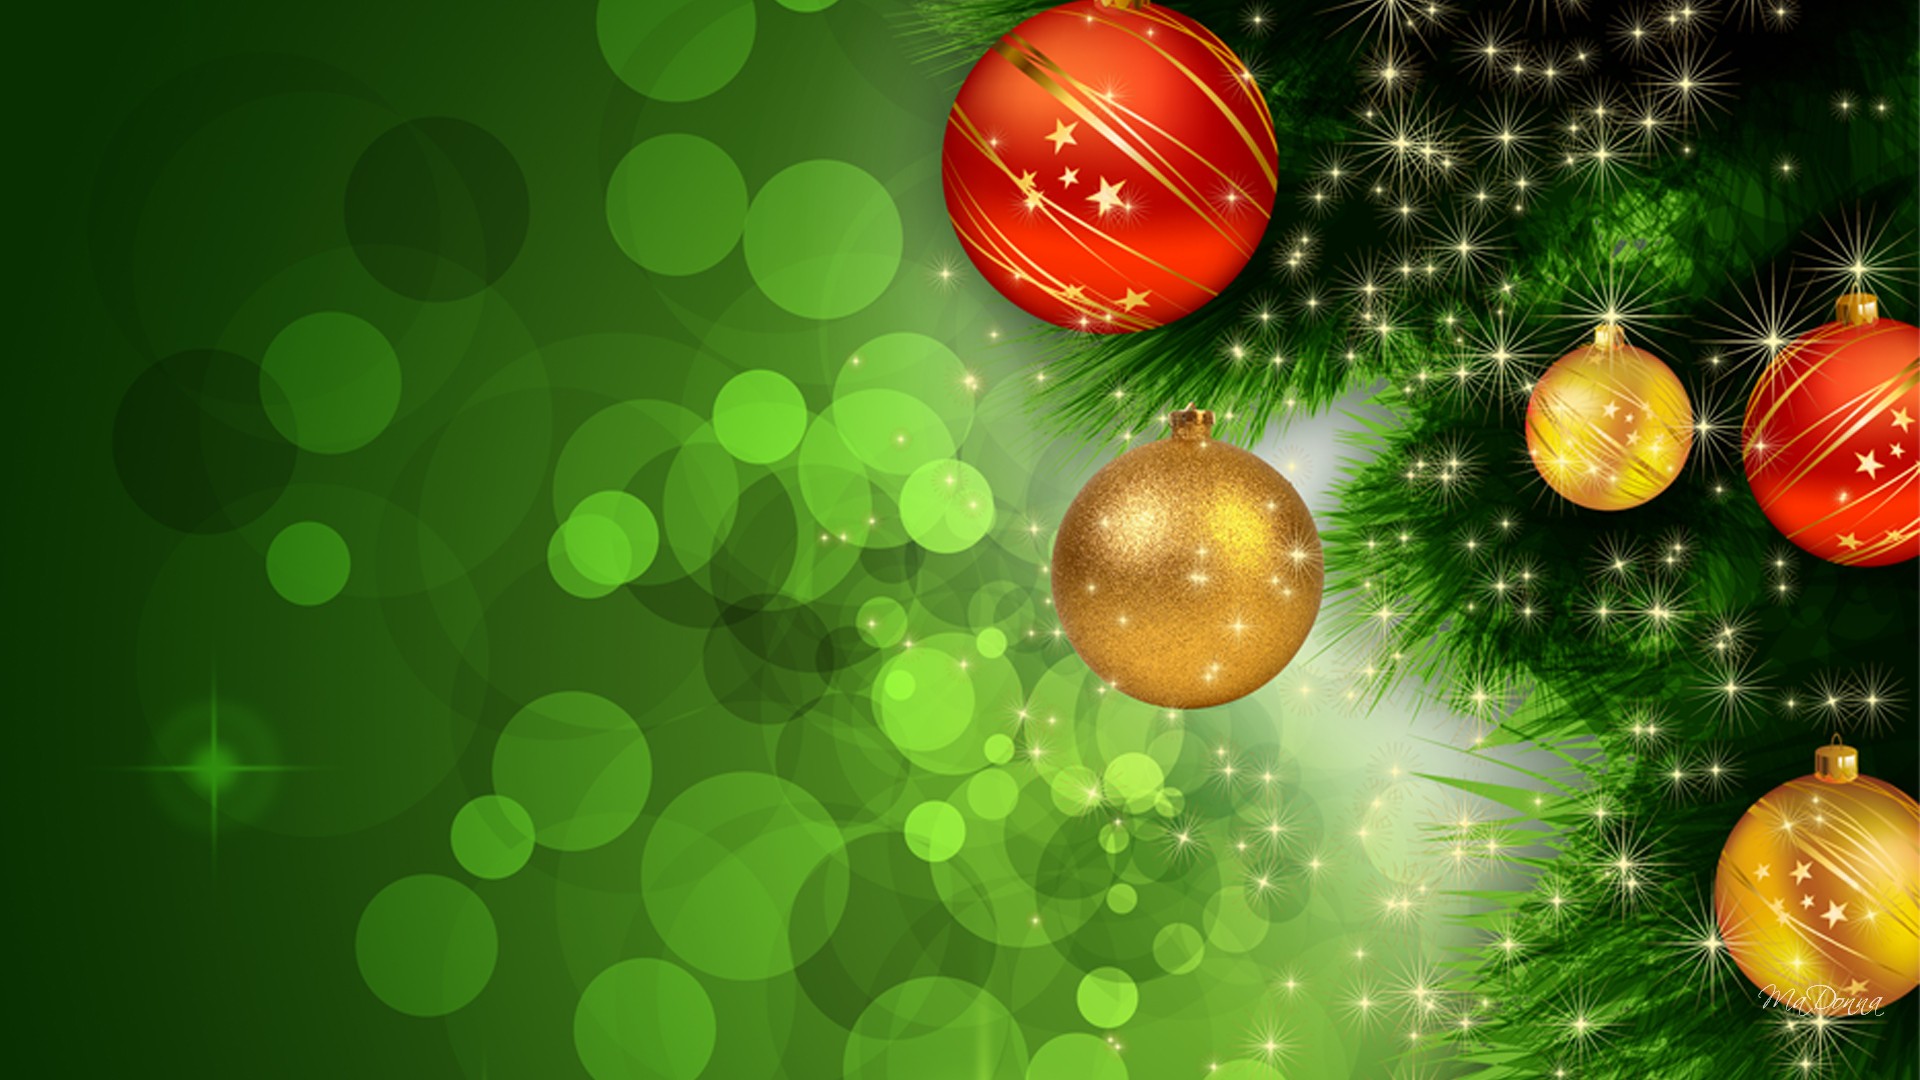 papel pintado de navidad verde,verde,decoración navideña,navidad,árbol,árbol de navidad